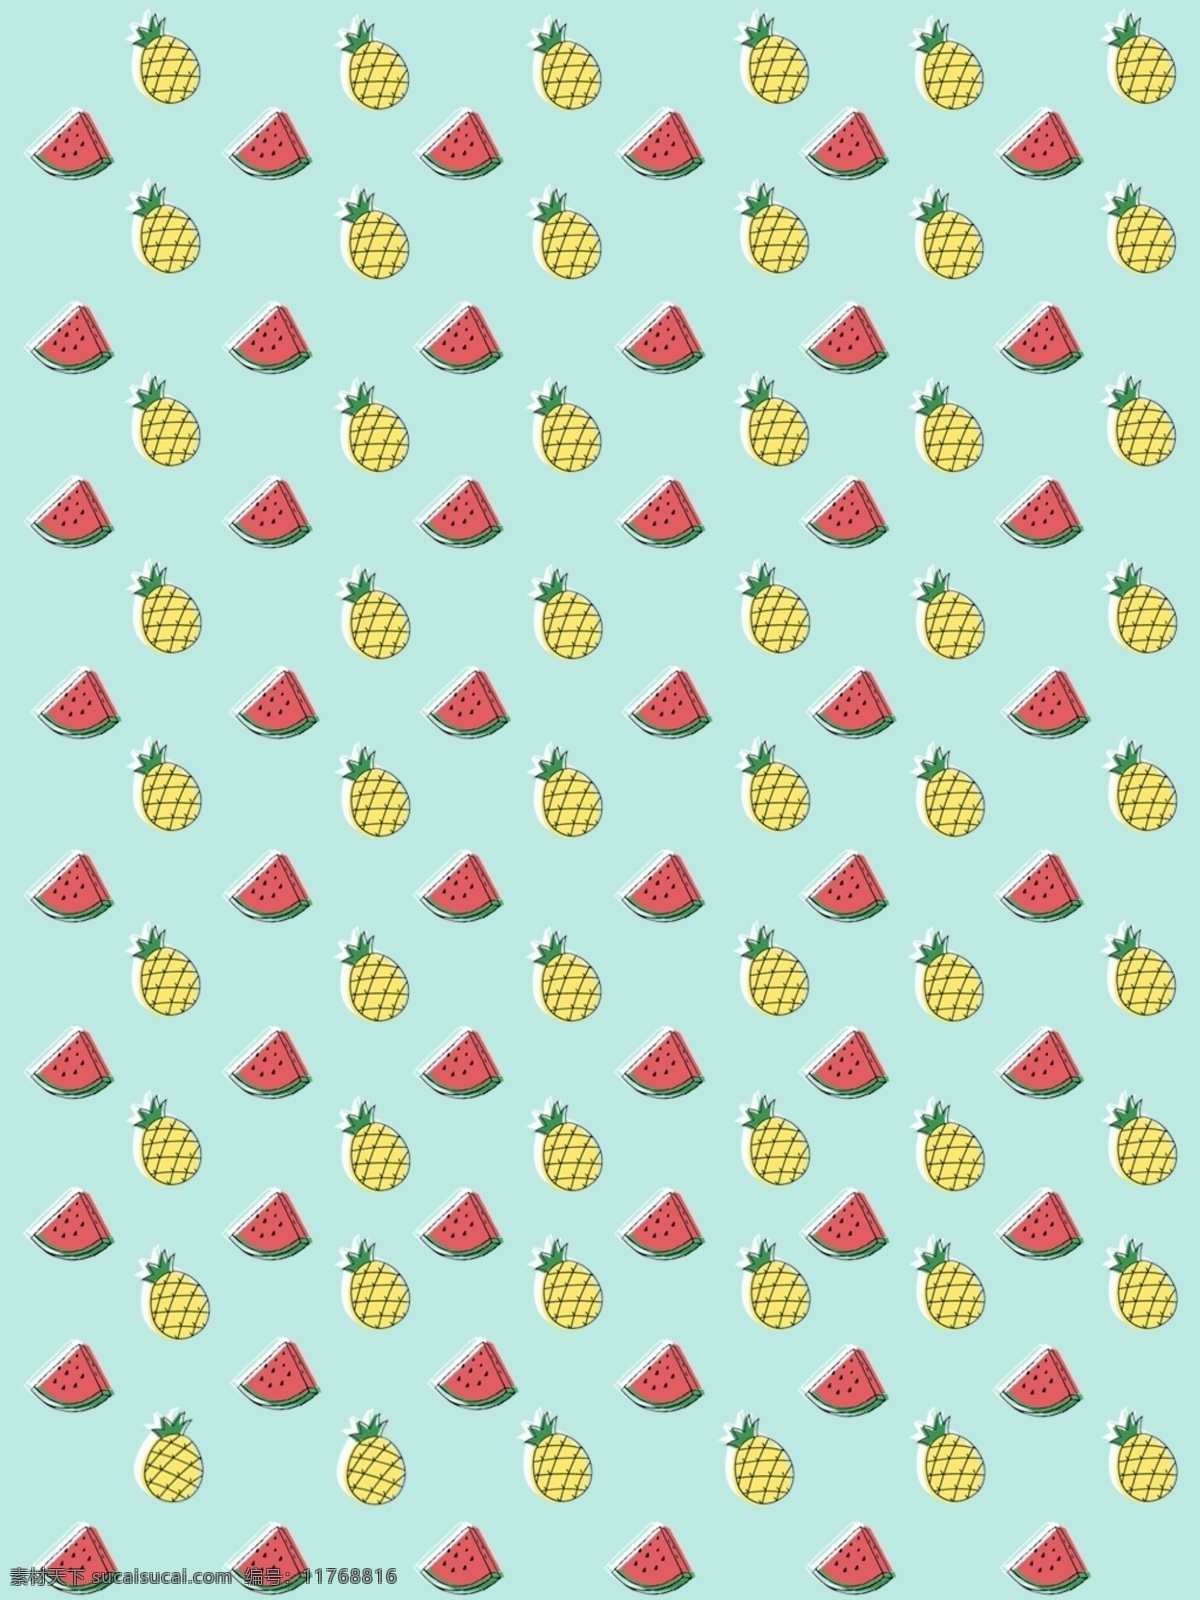 原创 简约 西瓜 菠萝 背景 水果背景 可爱 少女 小清新 通用 全原创 最新 西瓜菠萝 百搭 手机壁纸